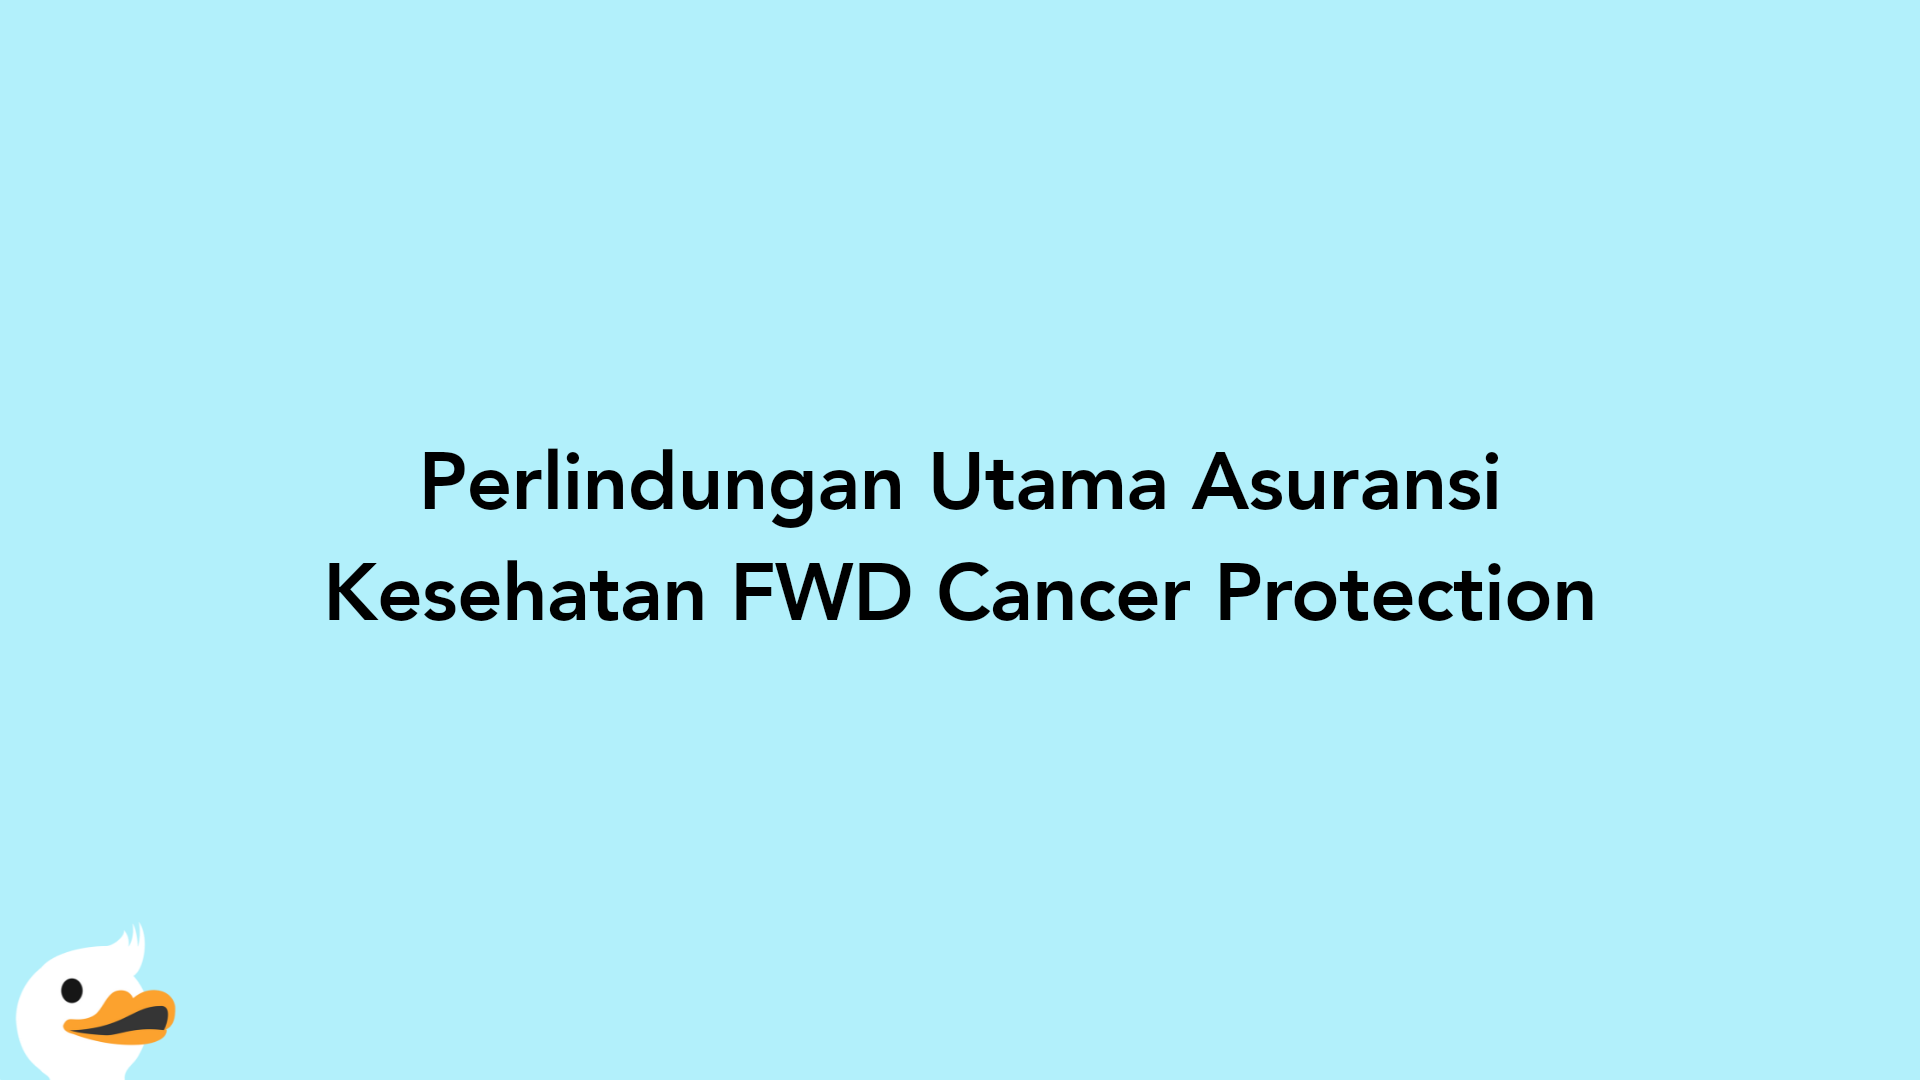 Perlindungan Utama Asuransi Kesehatan FWD Cancer Protection